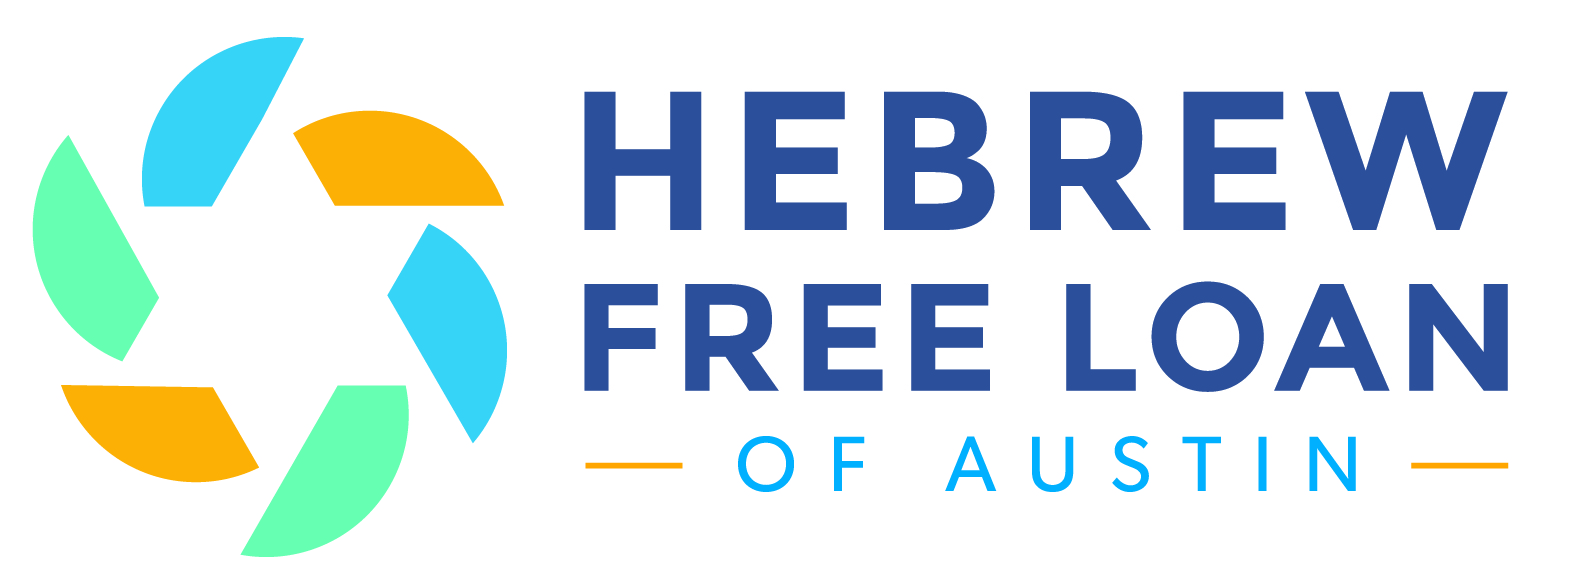 Hebrew Free Loan of Austin